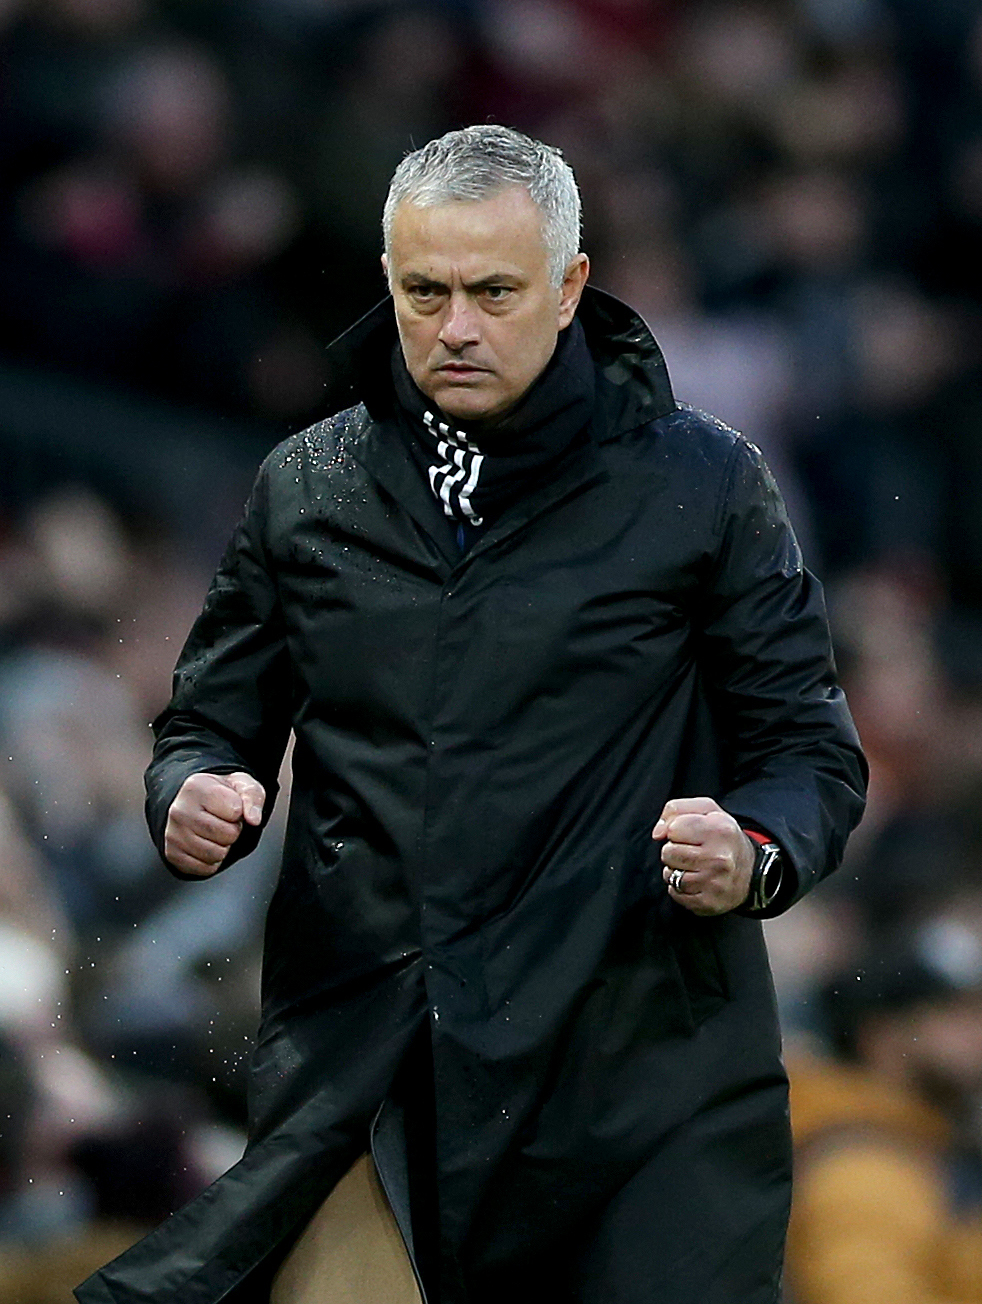 Jose Mourinho konnte 50 seiner ersten 81 Spiele als Trainer gewinnen